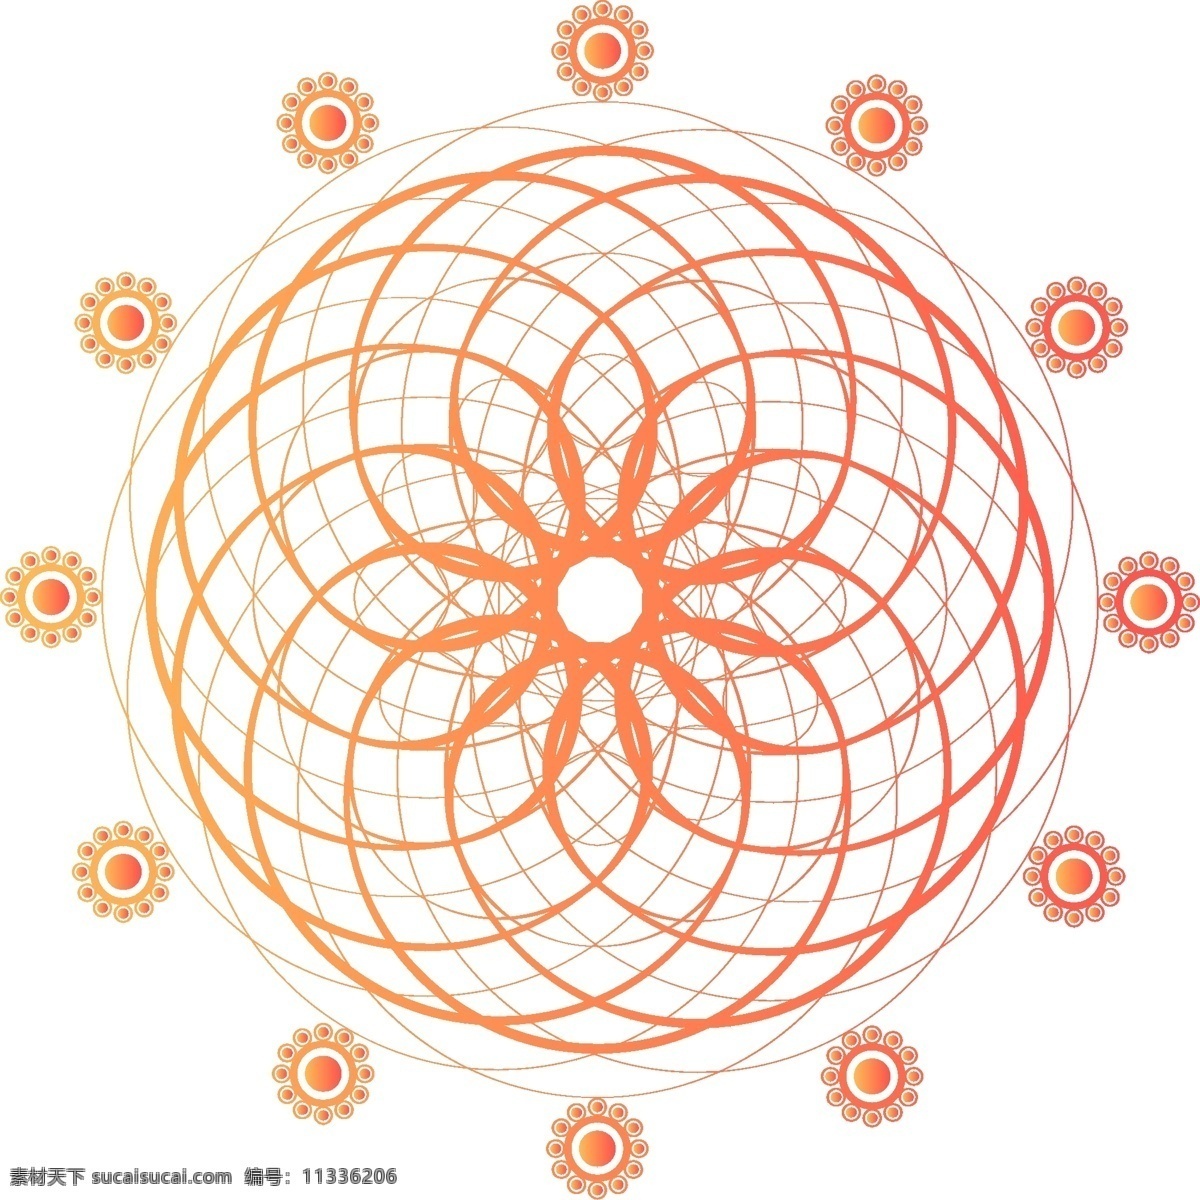 原创 珊瑚 橘 矢量 几何 万花筒 旋转 渐变 元素 设计元素 装饰 花纹 珊瑚橘 锦鲤红 可商用